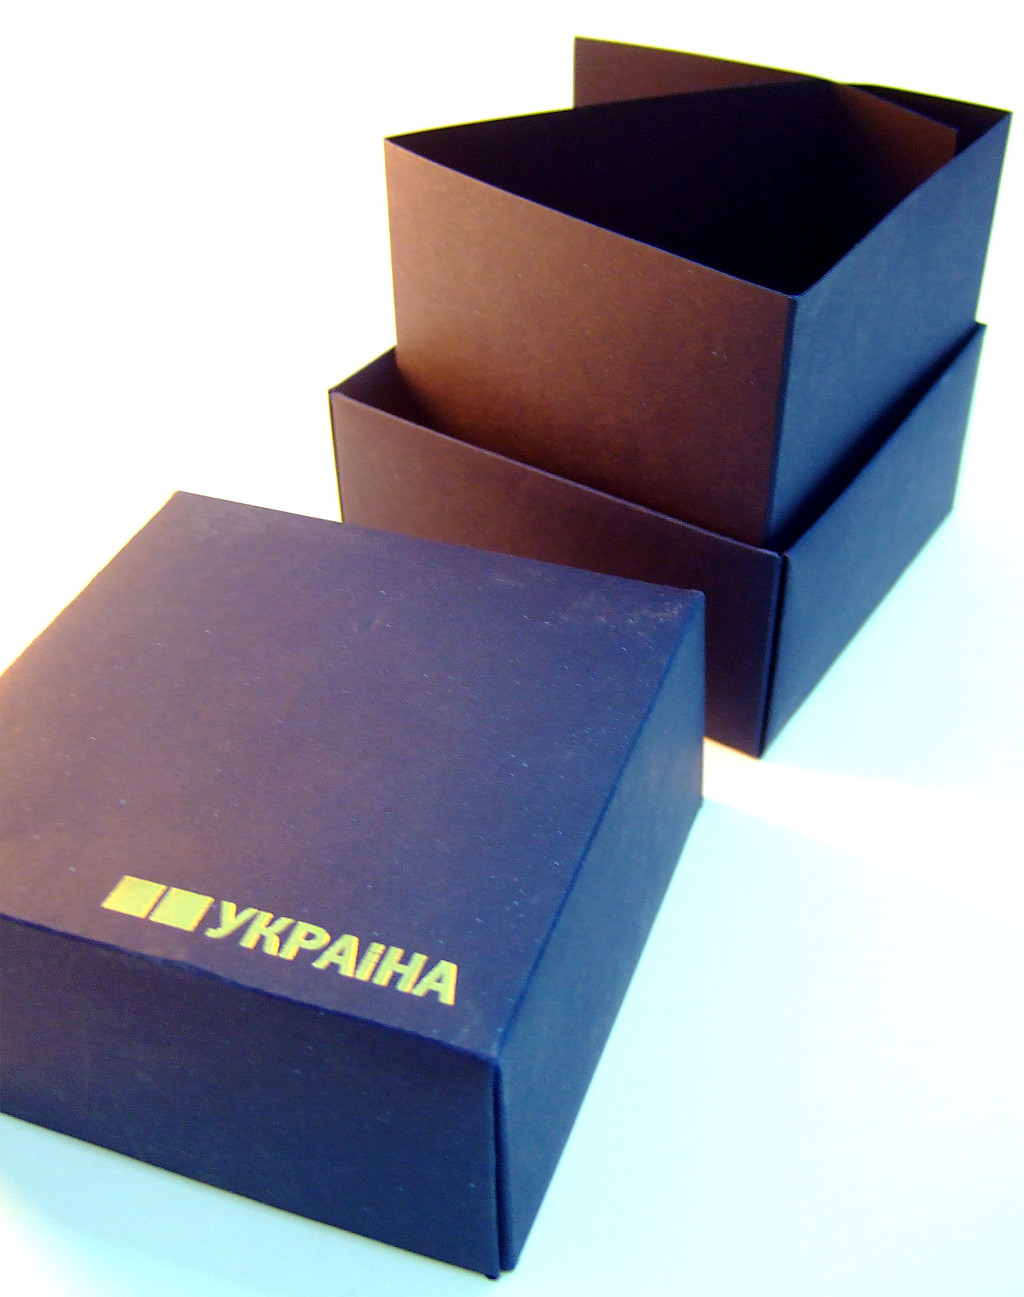 Печать упаковки «Україна». Полиграфия типографии Макрос, изготовление упаковки, спецификация 971997-3